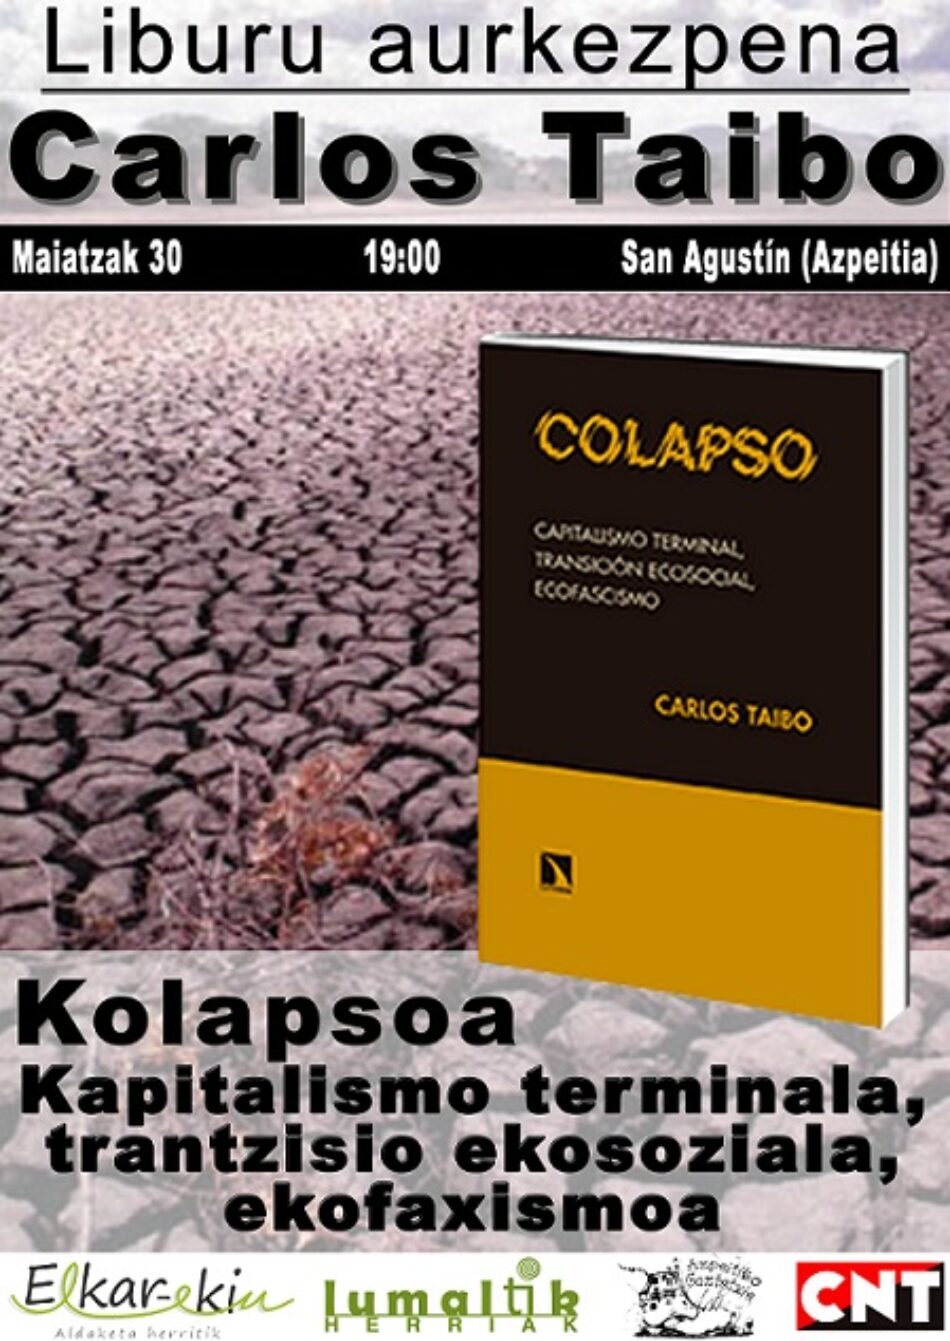 El martes 30, charla de Carlos Taibo en Azpeitia